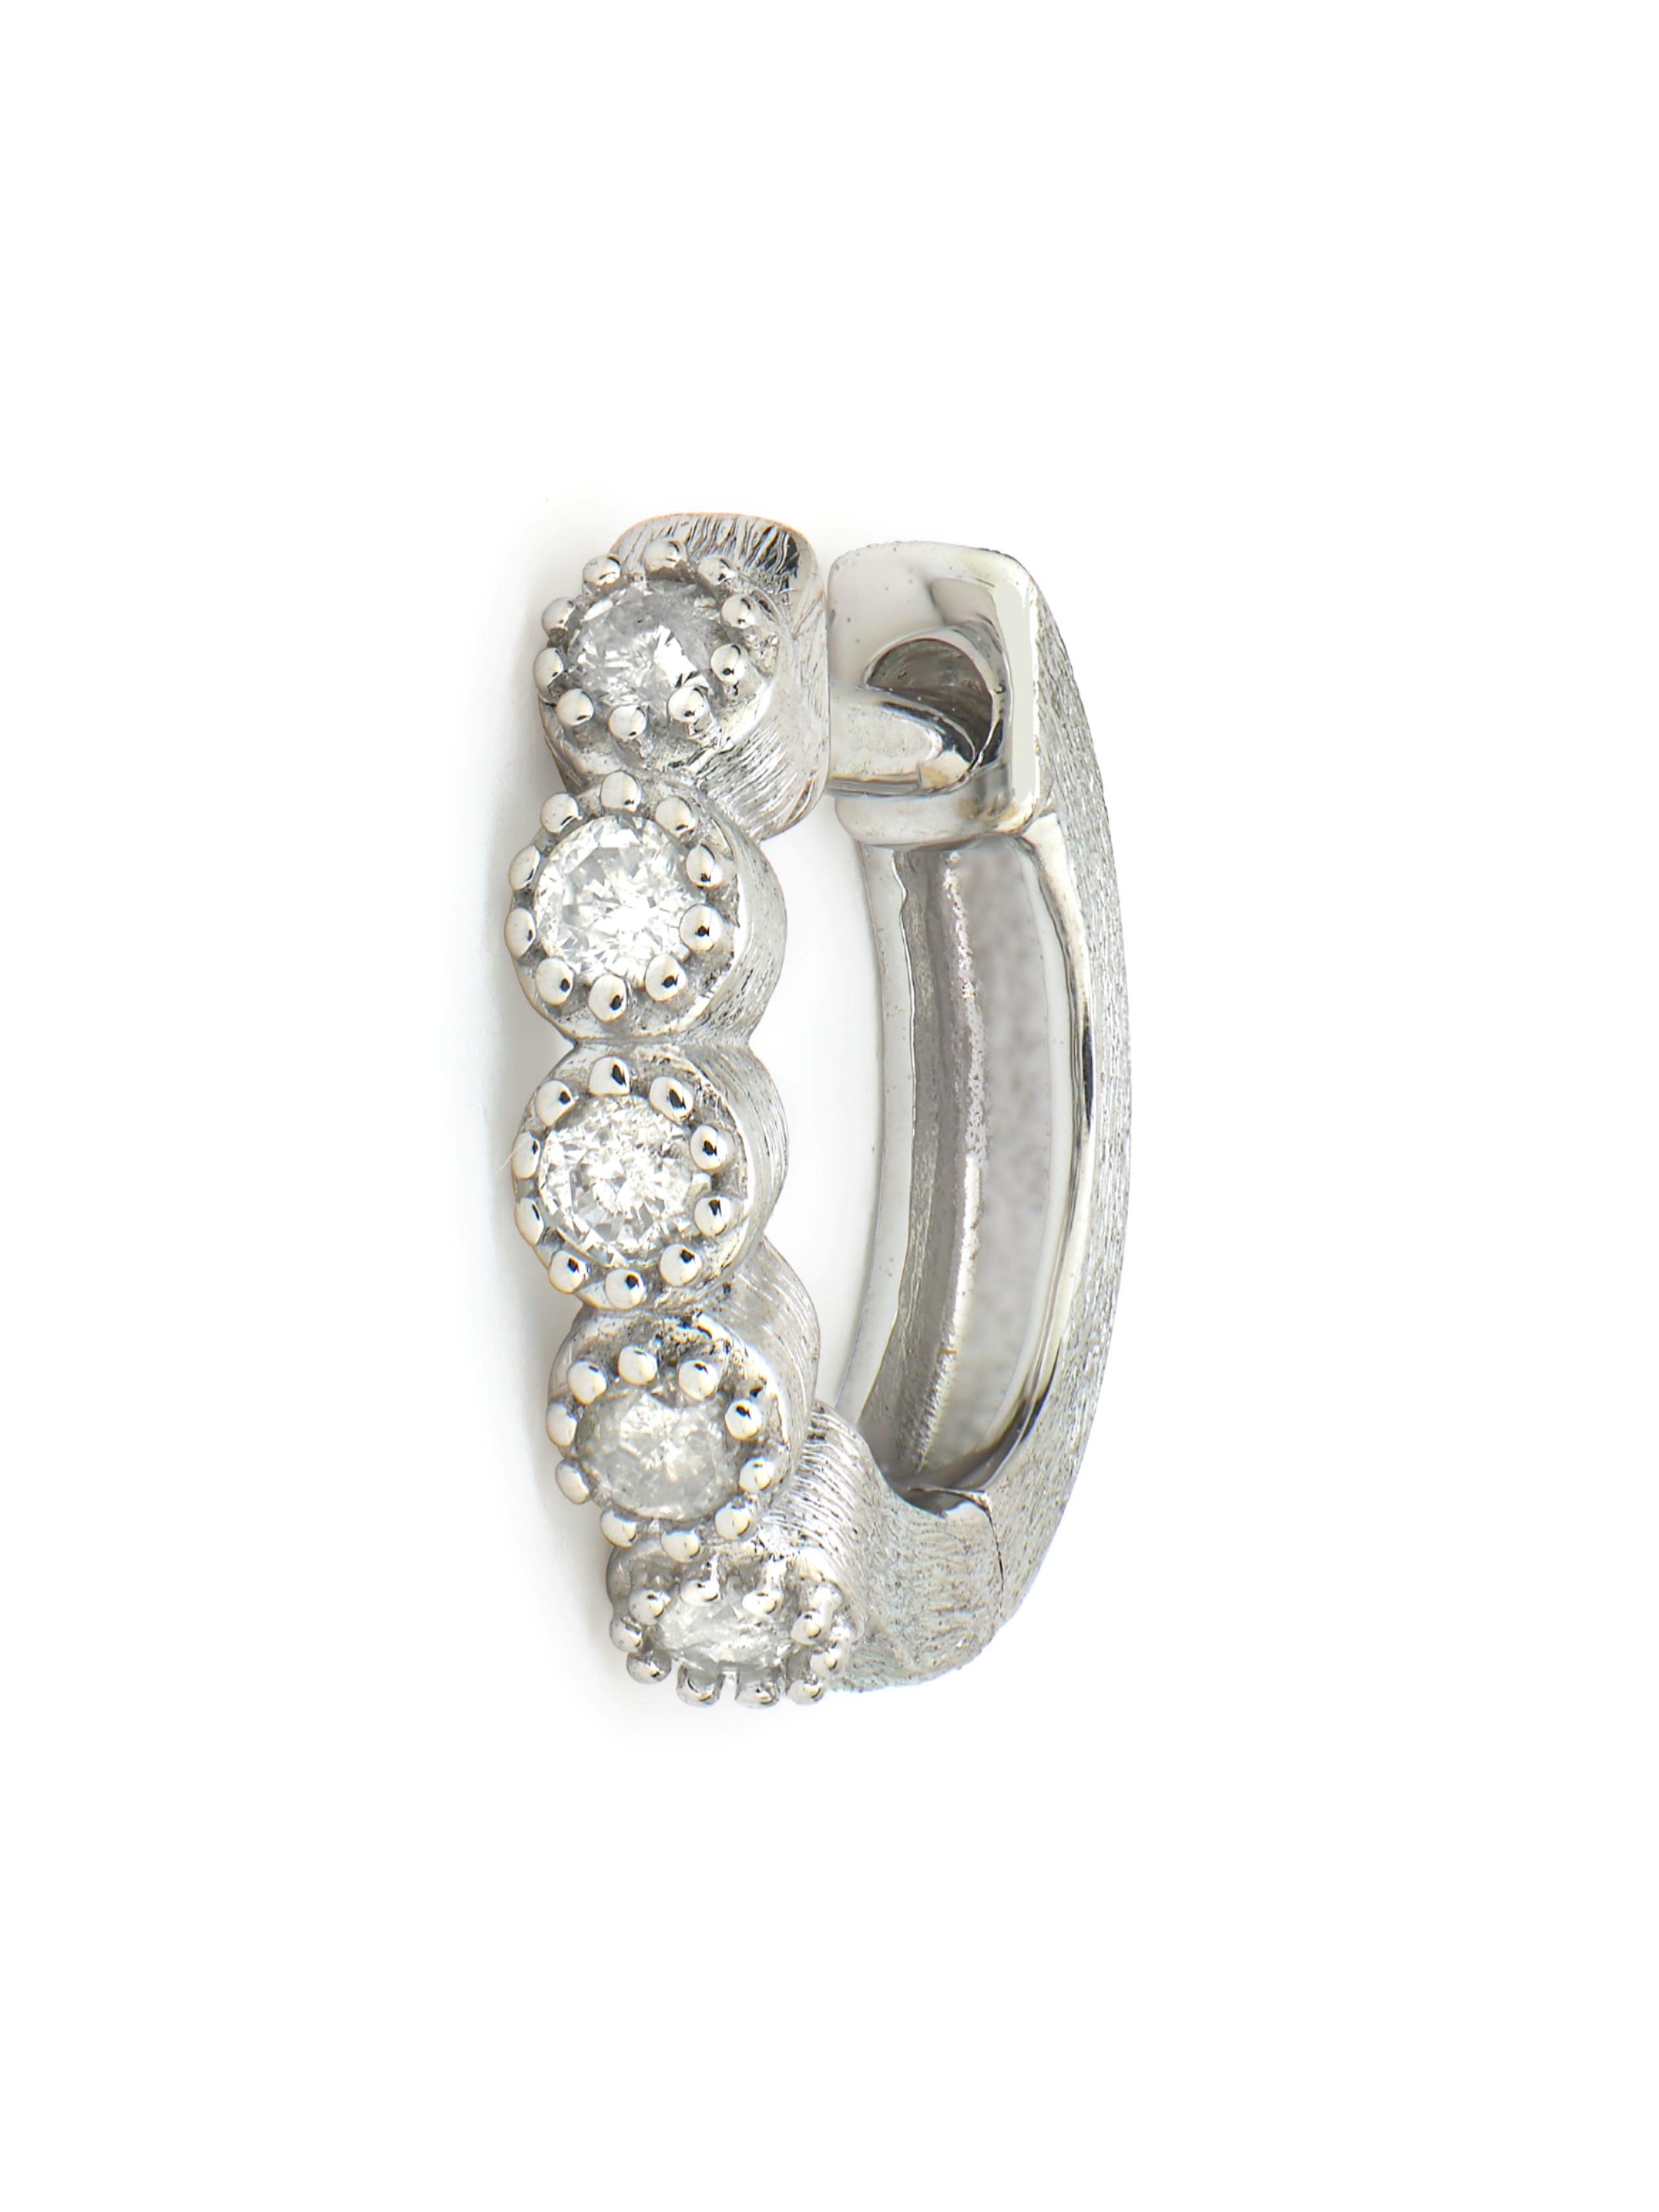 Jude Frances Petite Diamond Pave Key Earring Charm - Southern Avenue Company